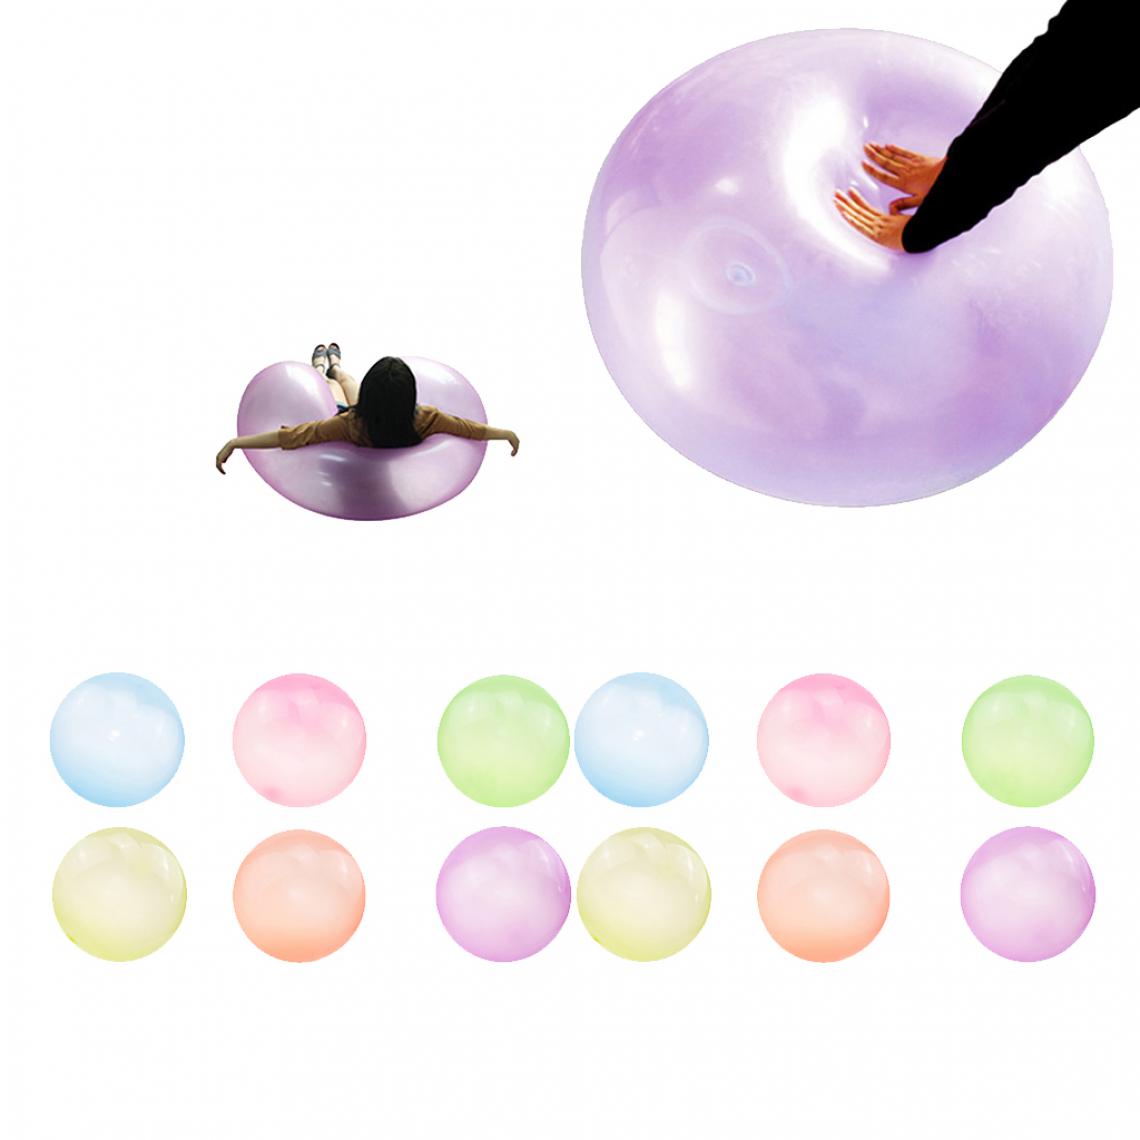 marque generique - 12pcs Bubble Ball, Ballon en TPR Grand Ballon Élastique Résistant à Déchirure Stretch Firm Ball Kids Fun Toy Gift -S - Jeux de récréation